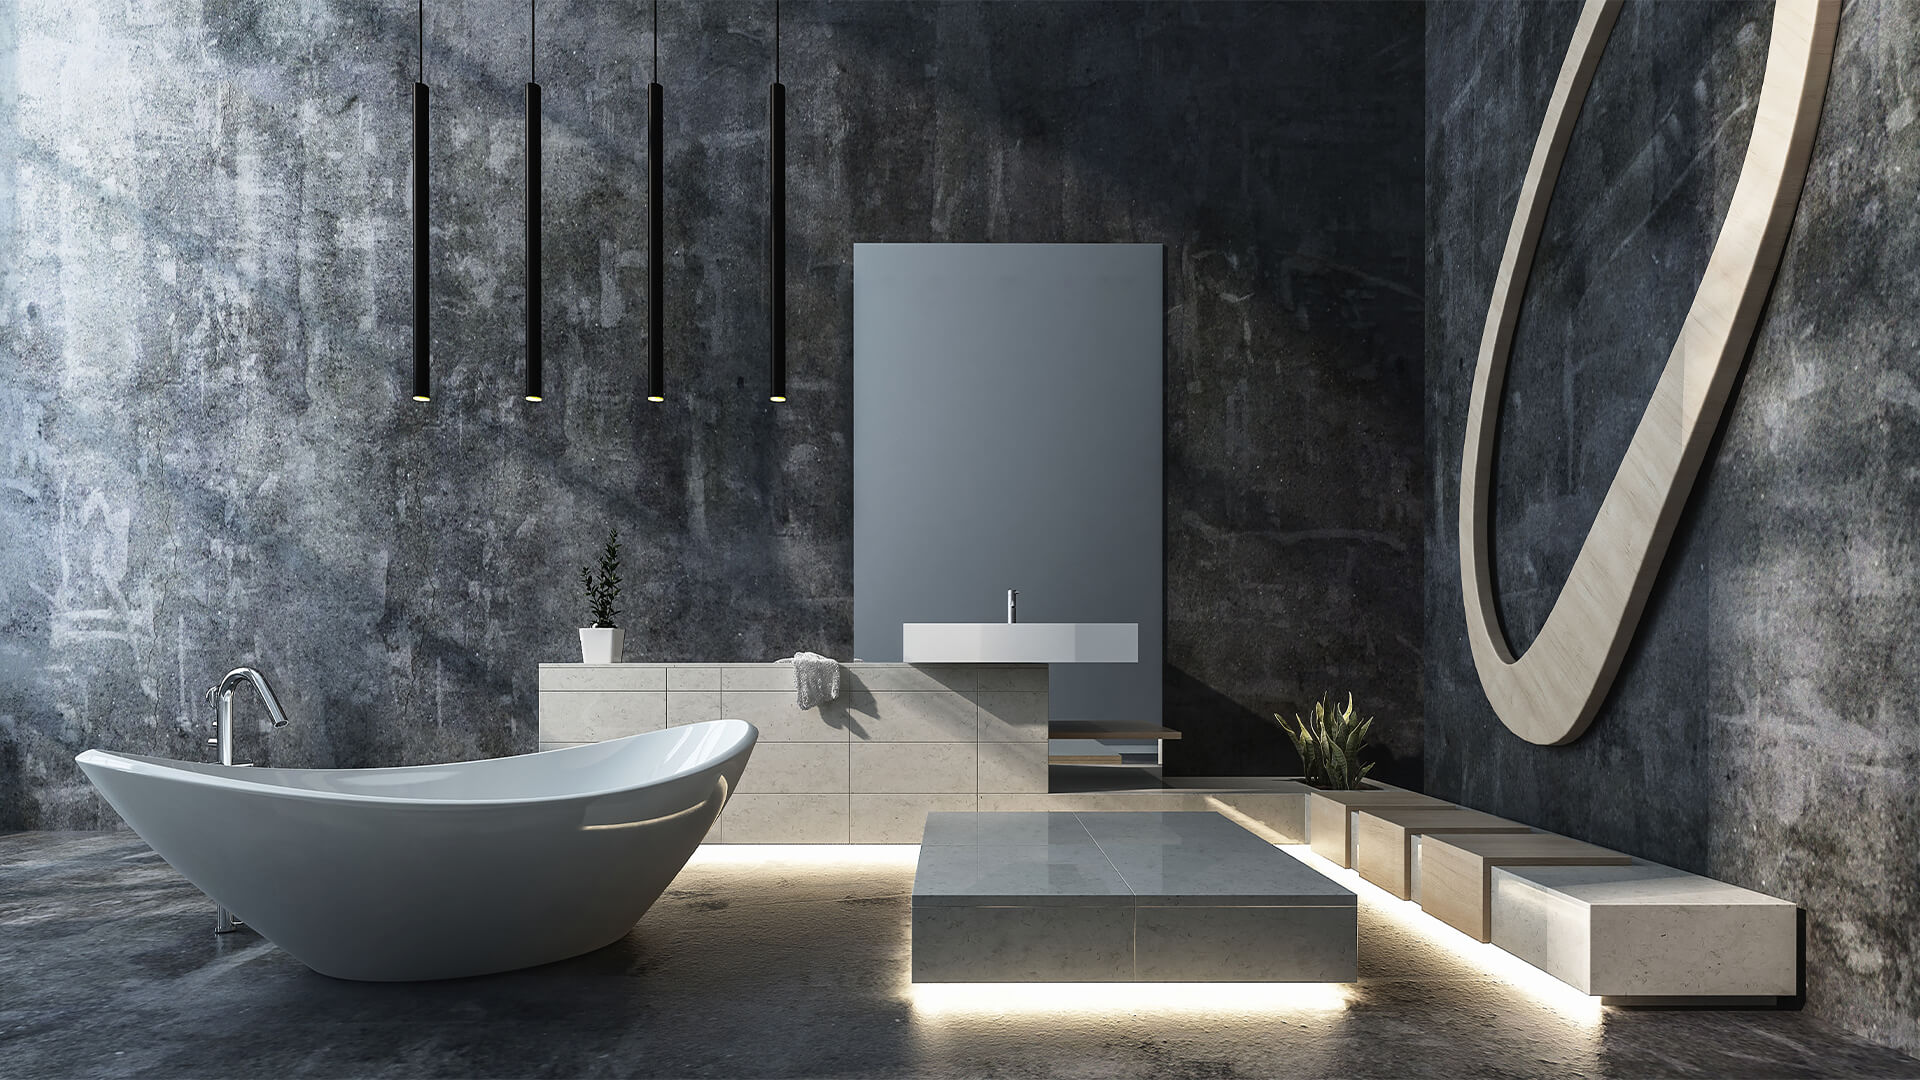  modern luxury designer bathroom inspo